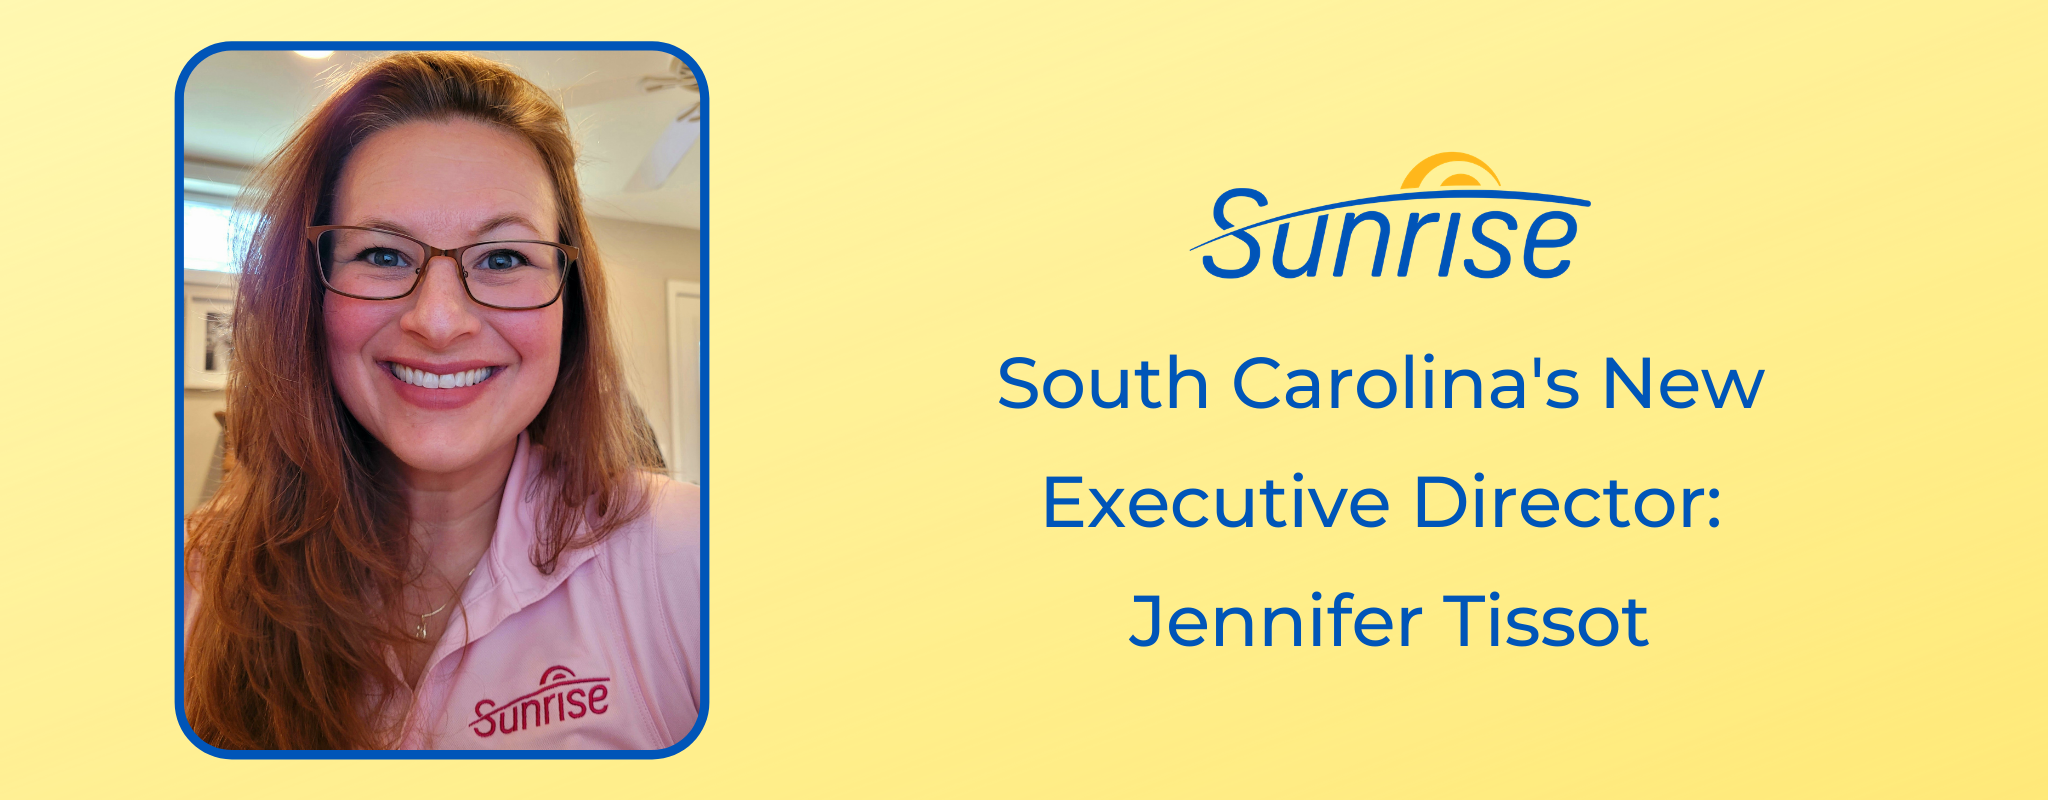 Nouvelle directrice générale de la Caroline du Sud: Jennifer Tissot